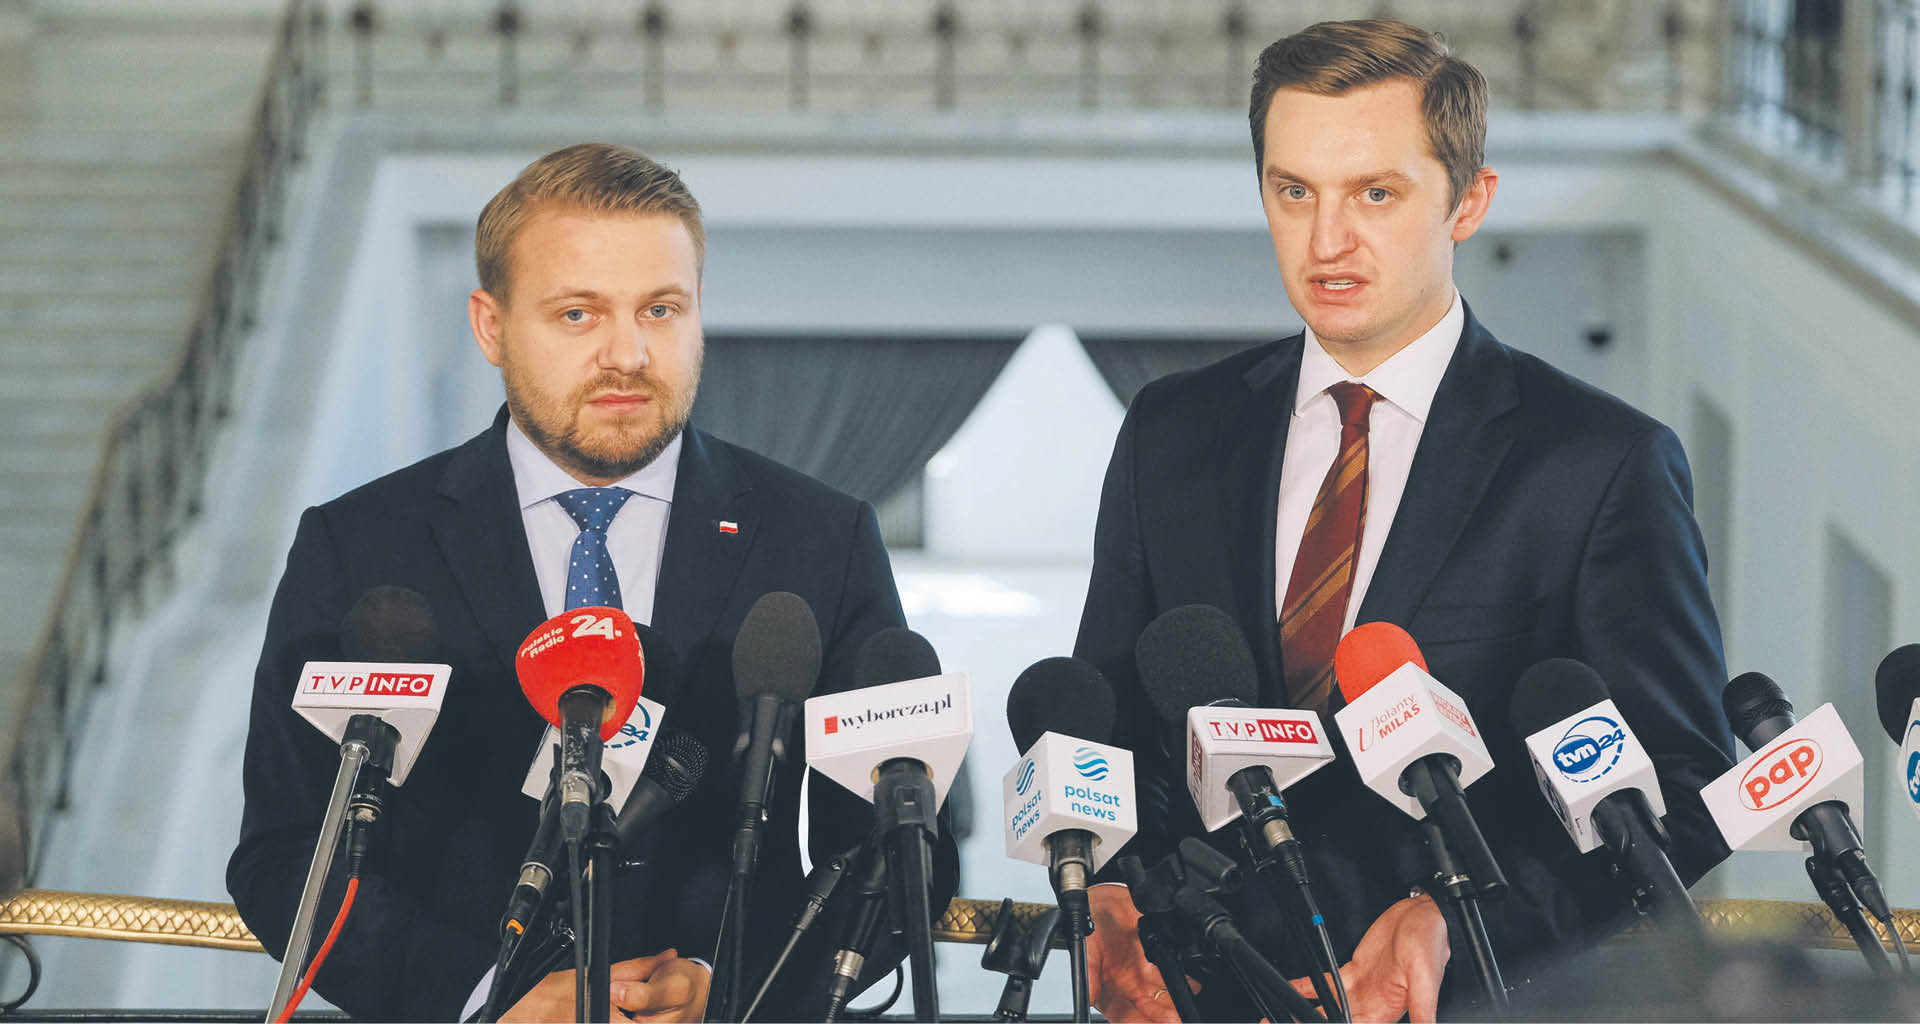 Europosłowie niemieccy nie ustają w atakowaniu Polski – komentował wiceminister sprawiedliwości Sebastian Kaleta po spotkaniu z europarlamentarzystami